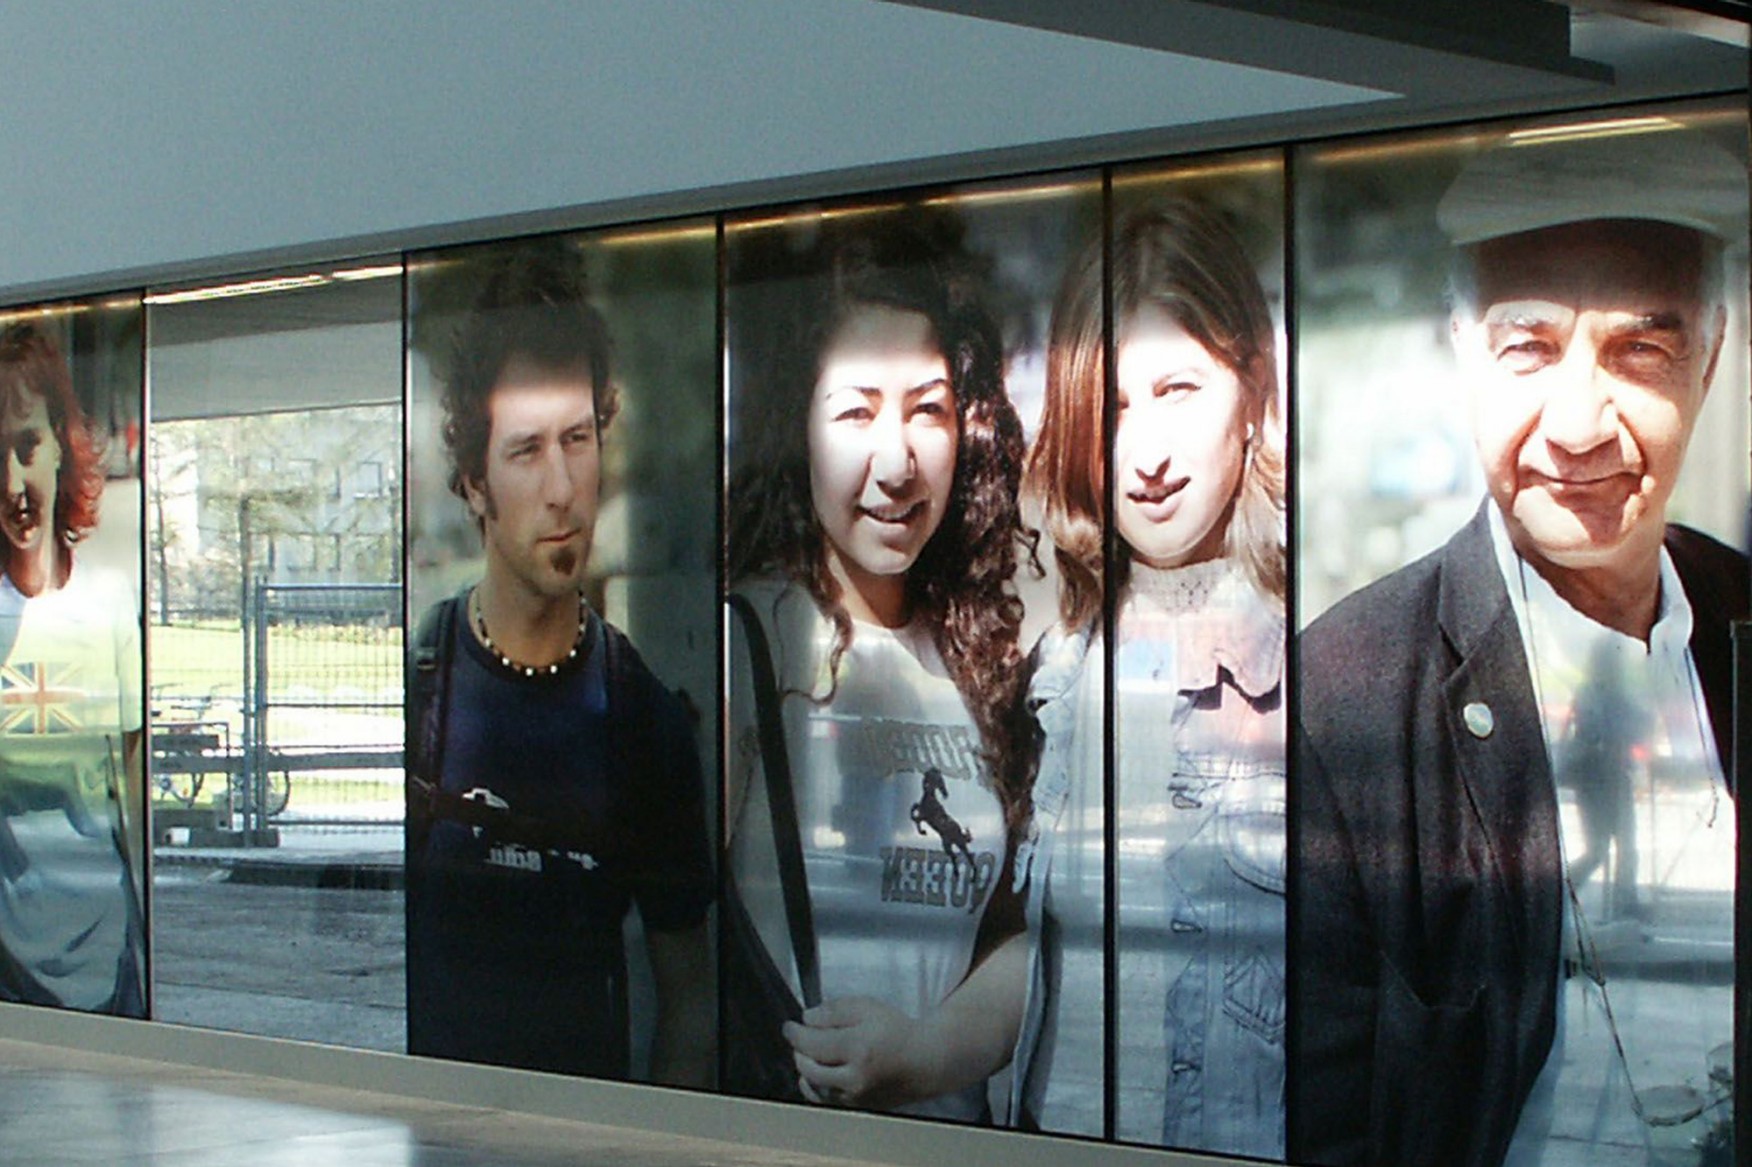  Halbtransparente Fotoportraits auf der Fensterfront